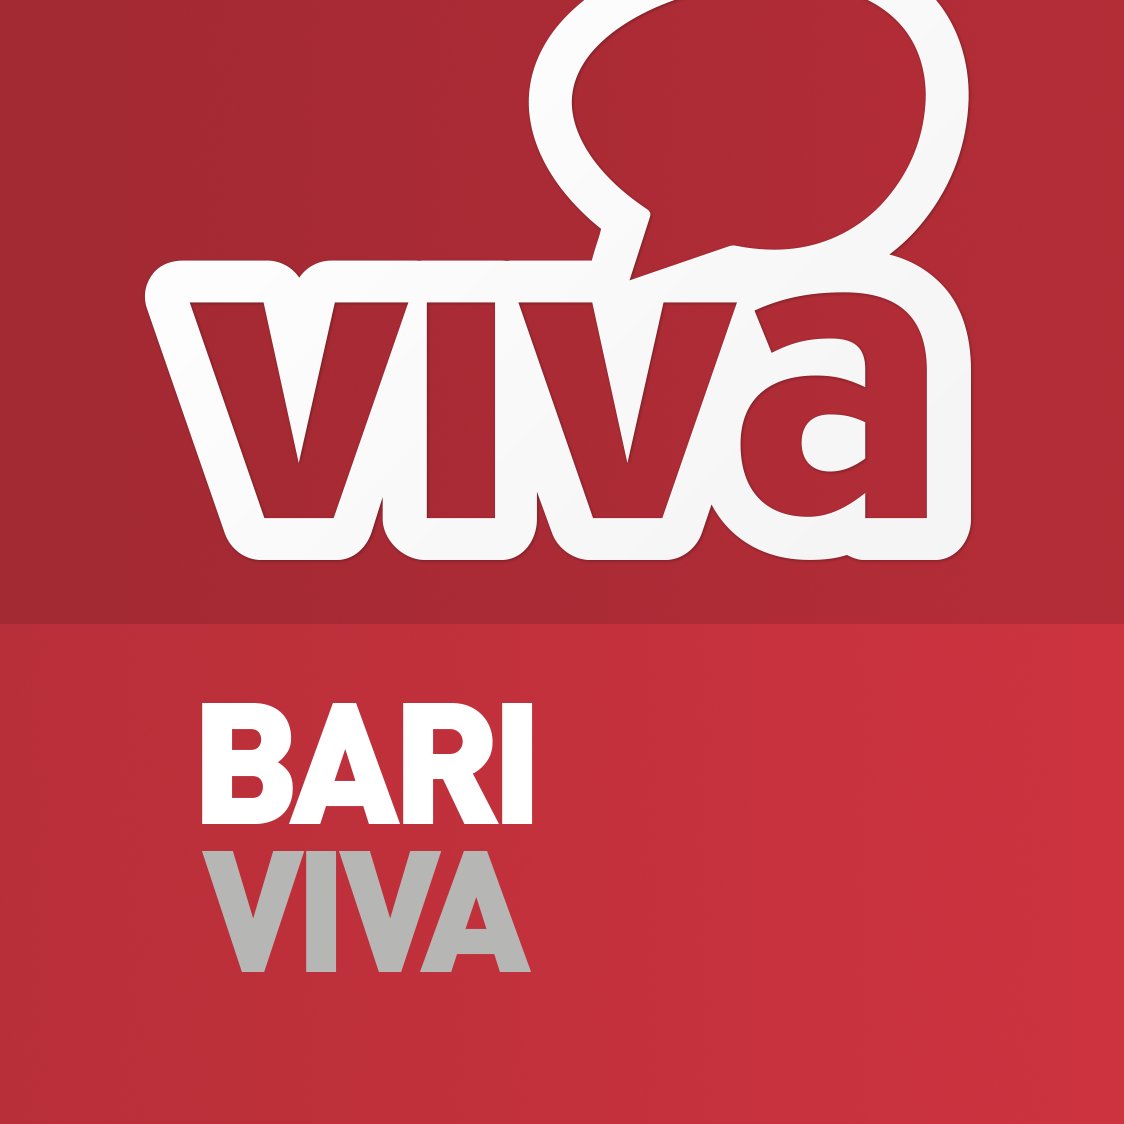 Redazione BariViva. Il portale di Bari: Notizie su Bari e provincia BT, turismo, monumenti, prenotazioni hotel, ristoranti e divertimento.